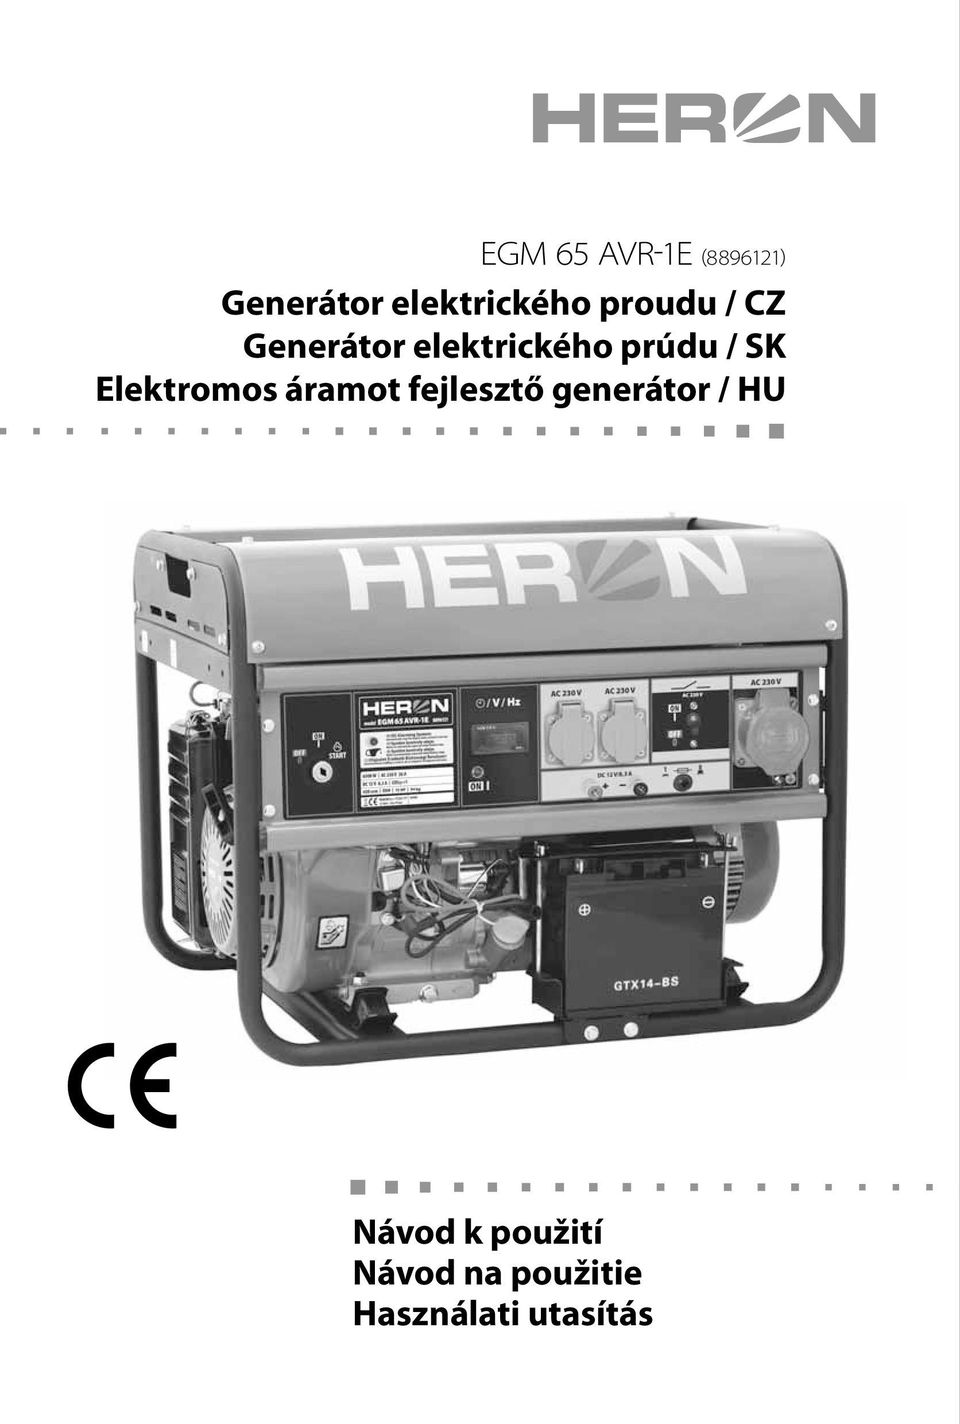 Elektromos áramot fejlesztő generátor / HU